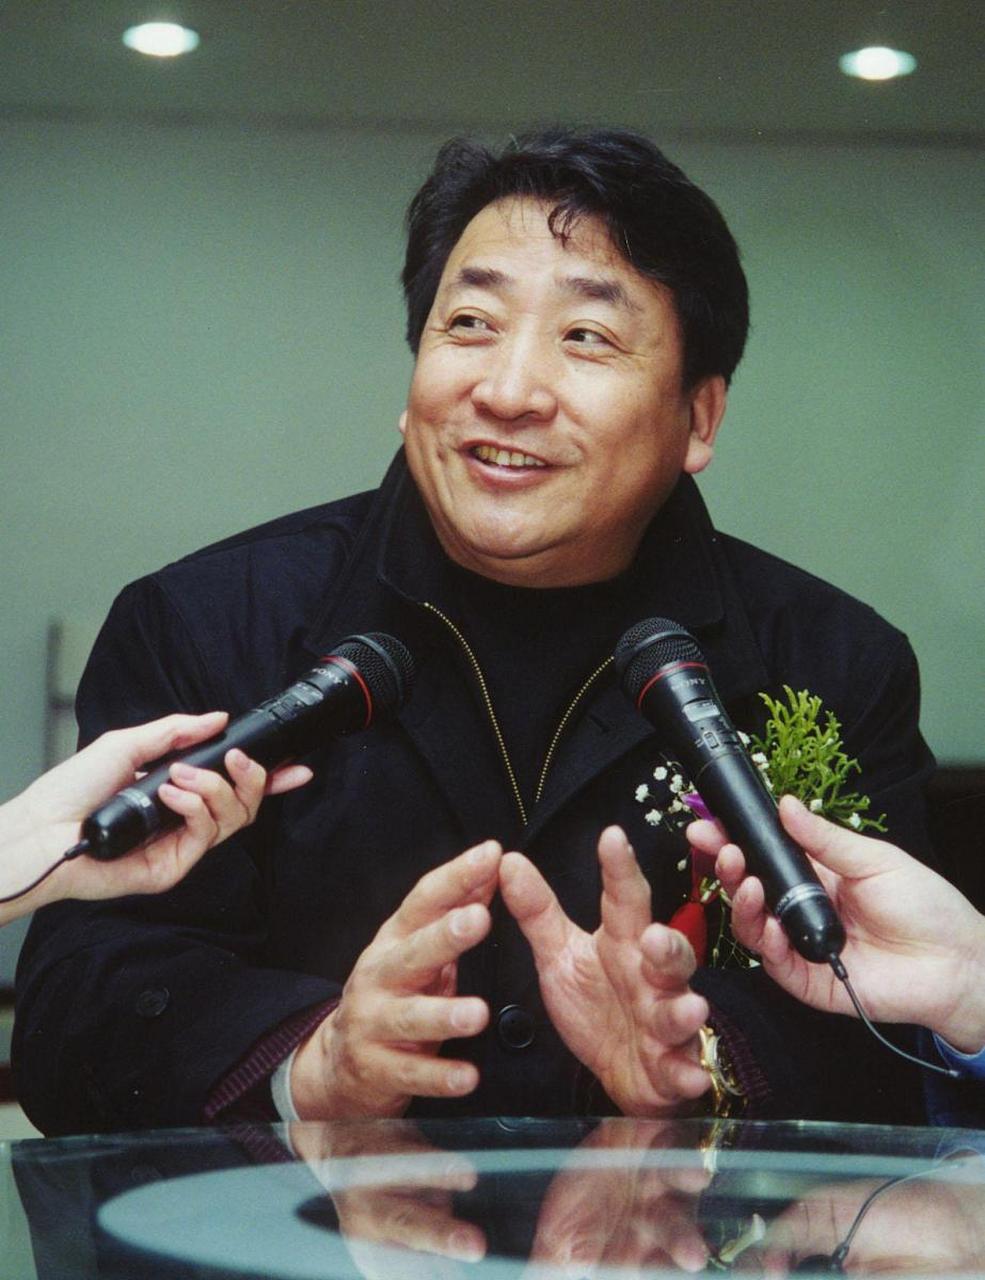 2005年,姜河进入广州军区杂技团工作,成为一名优秀的杂技演员